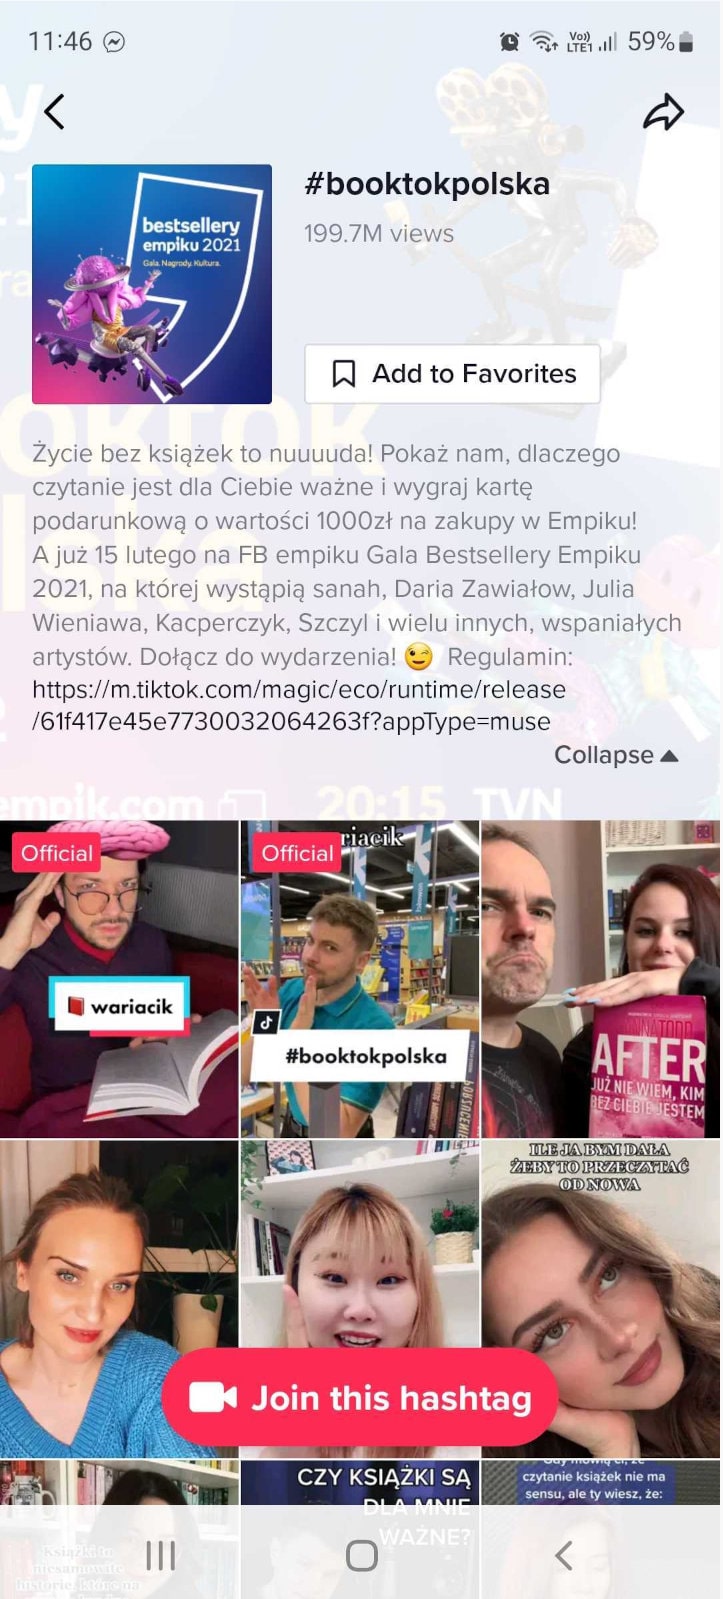 #Booktokpolska hashtag challenge